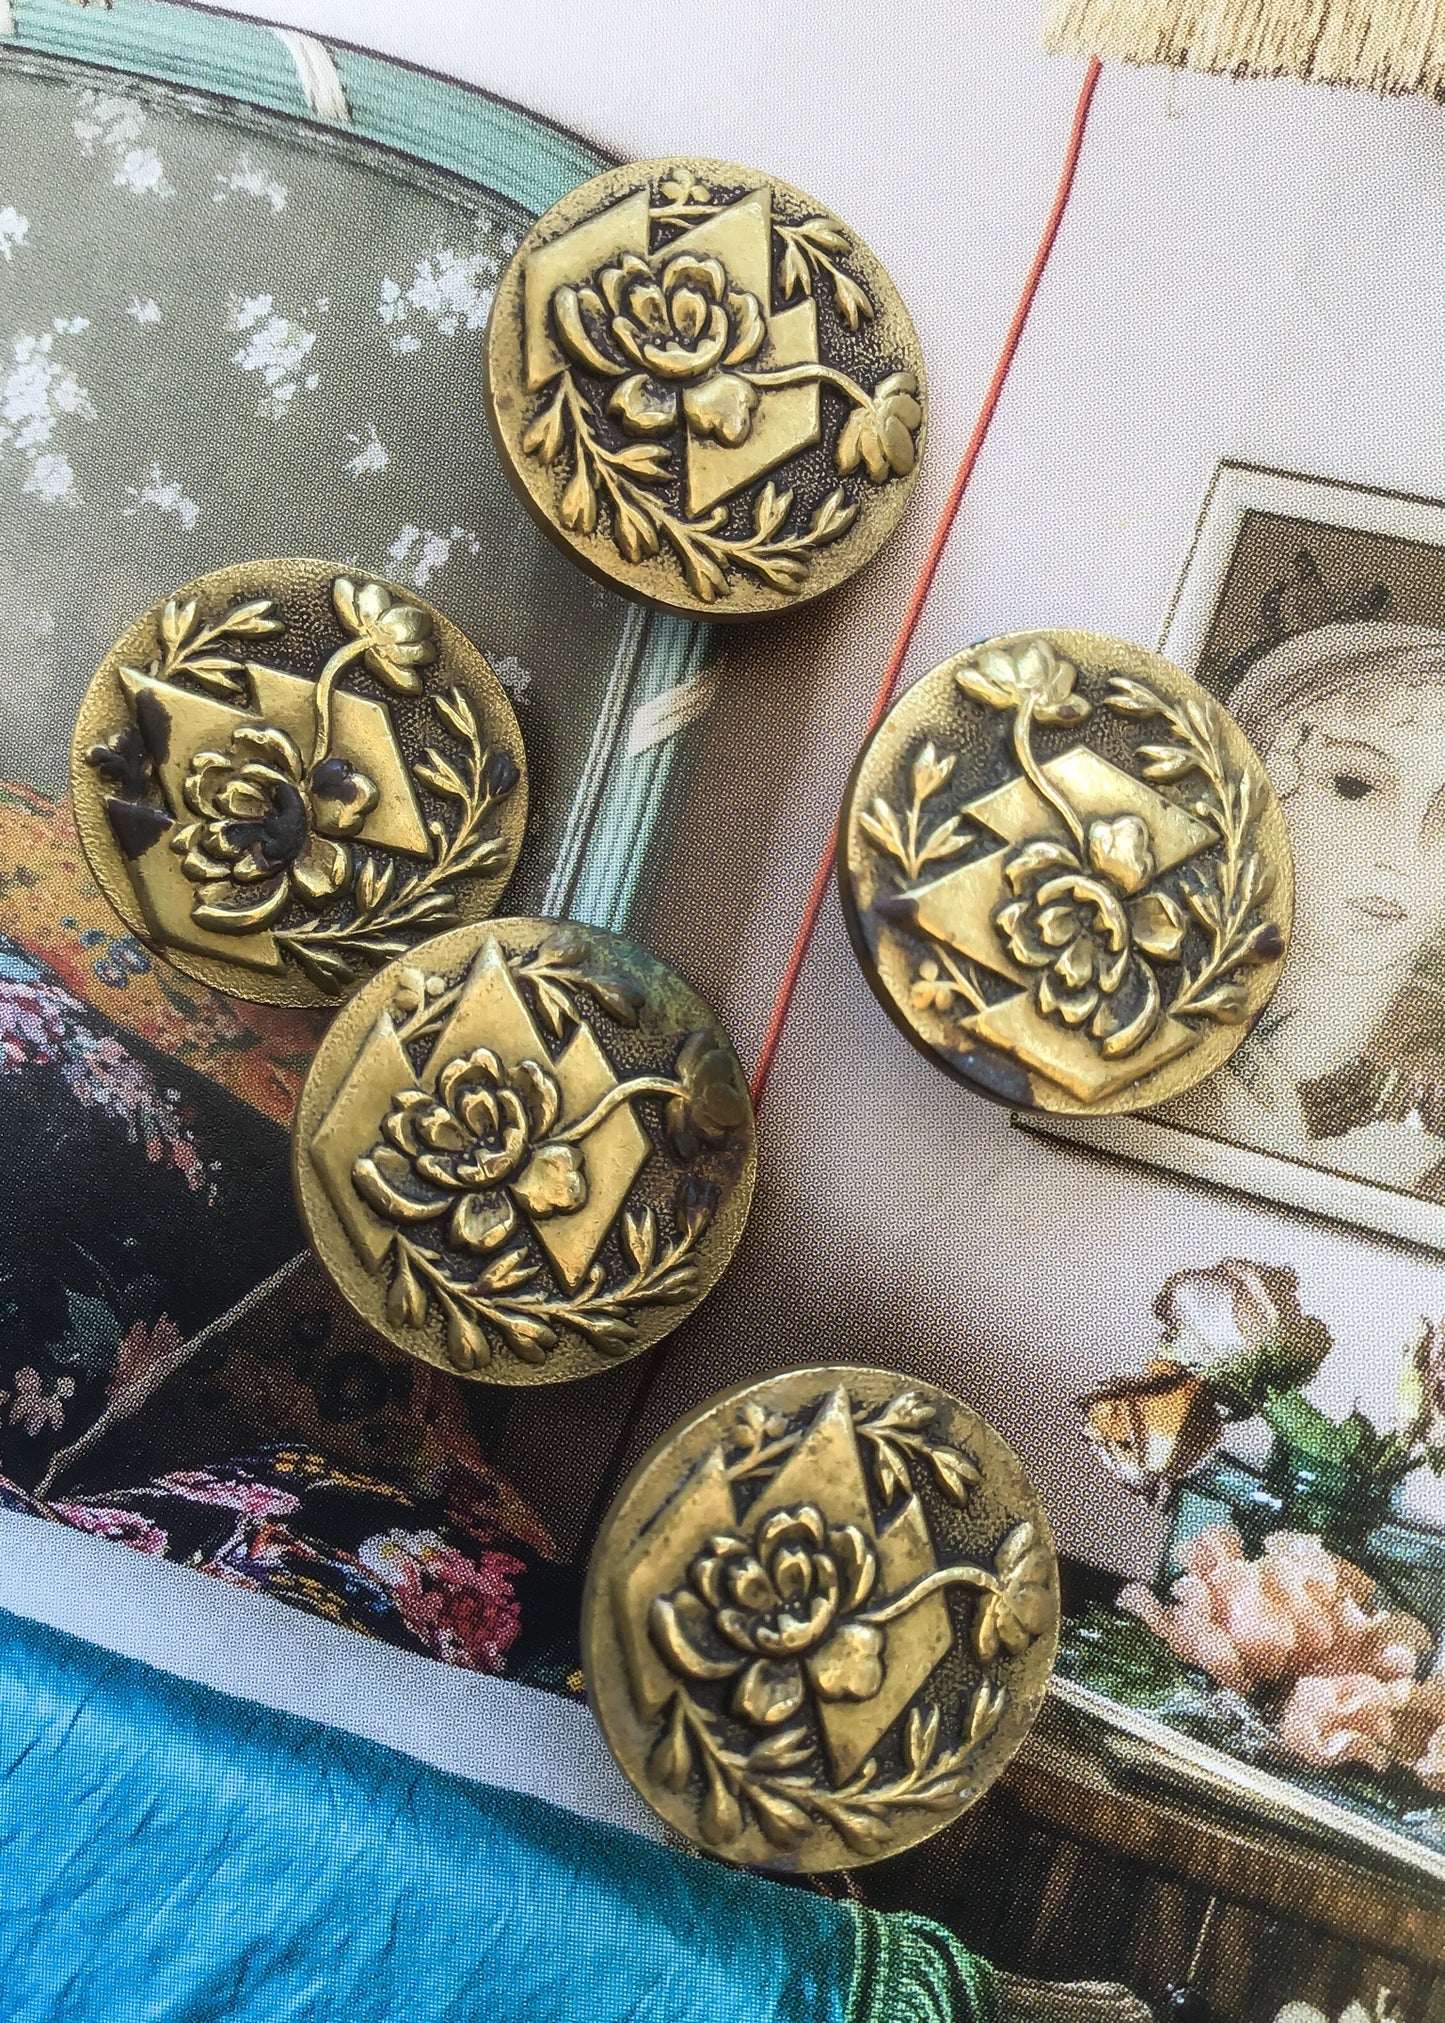 Antique art nouveau brass buttons of chrysanthemums by solidaire paris france